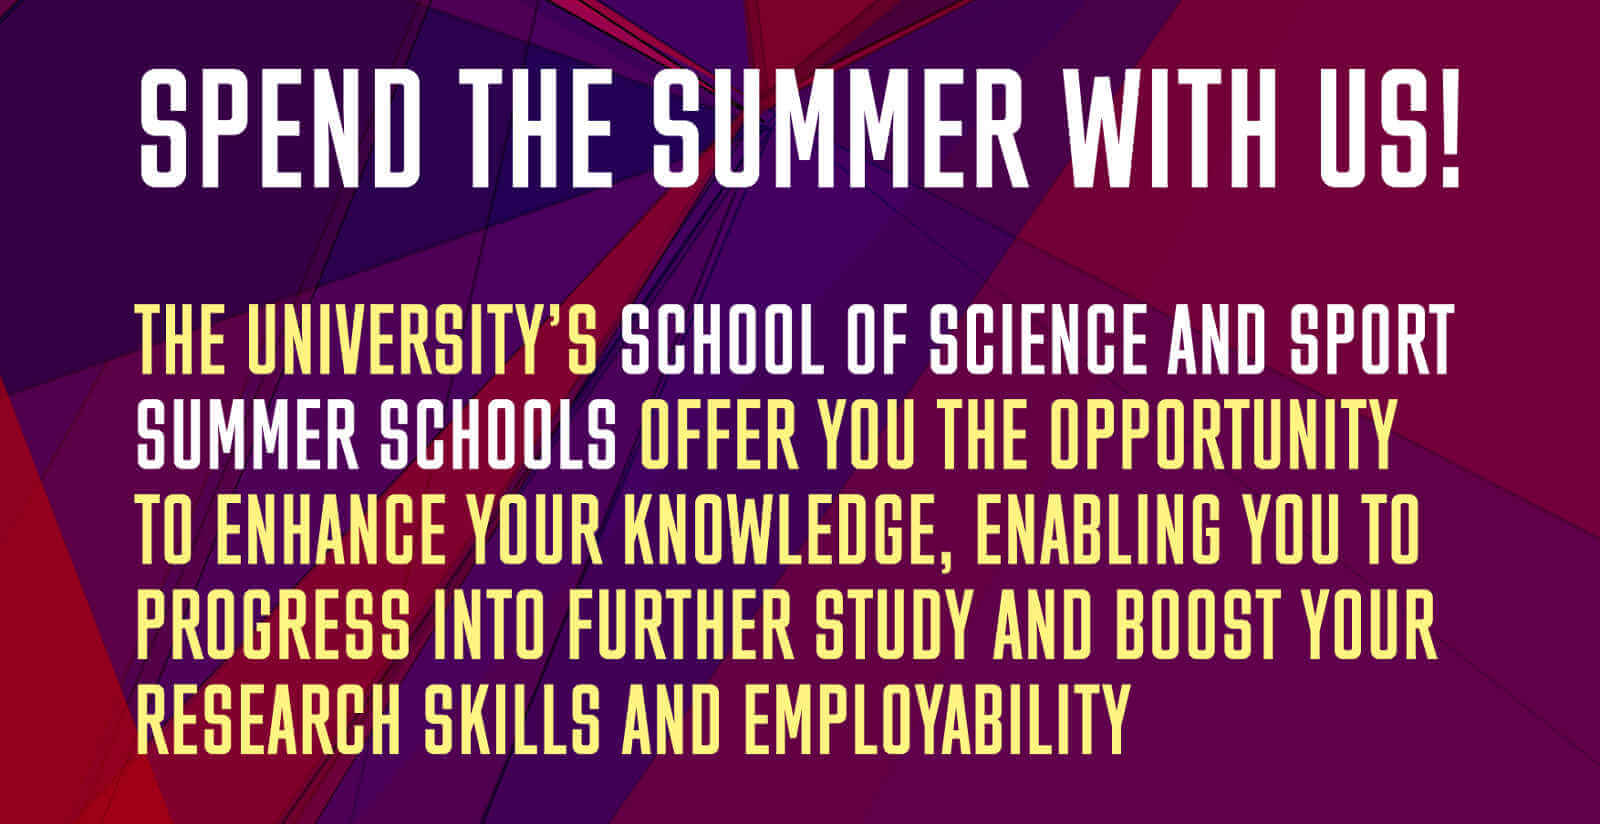 School of Science Summer School flyer image